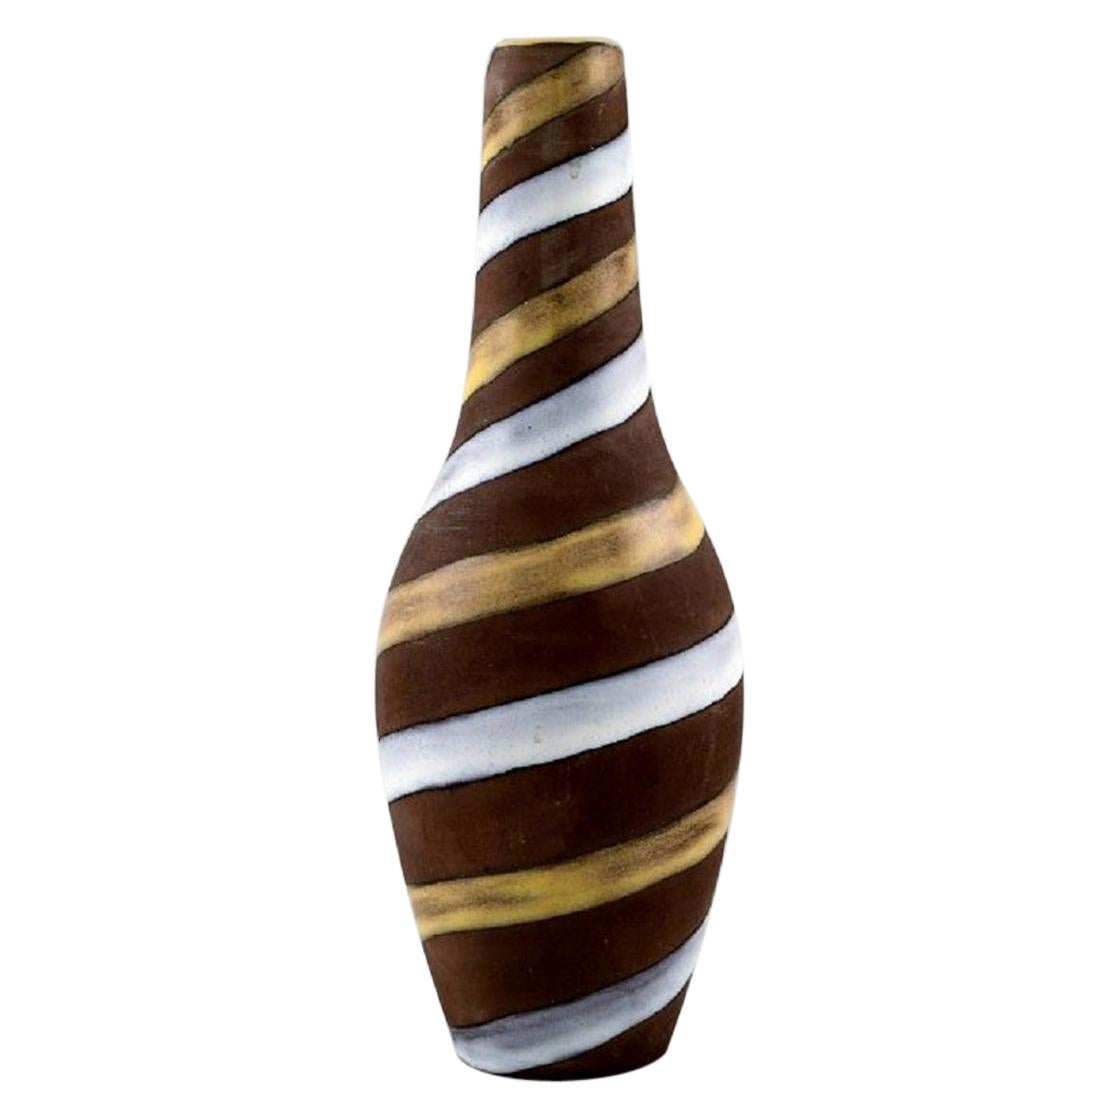 Ingrid Atterberg für Upsala-Ekeby, Vase aus glasierter Keramik, spiralförmiges Design